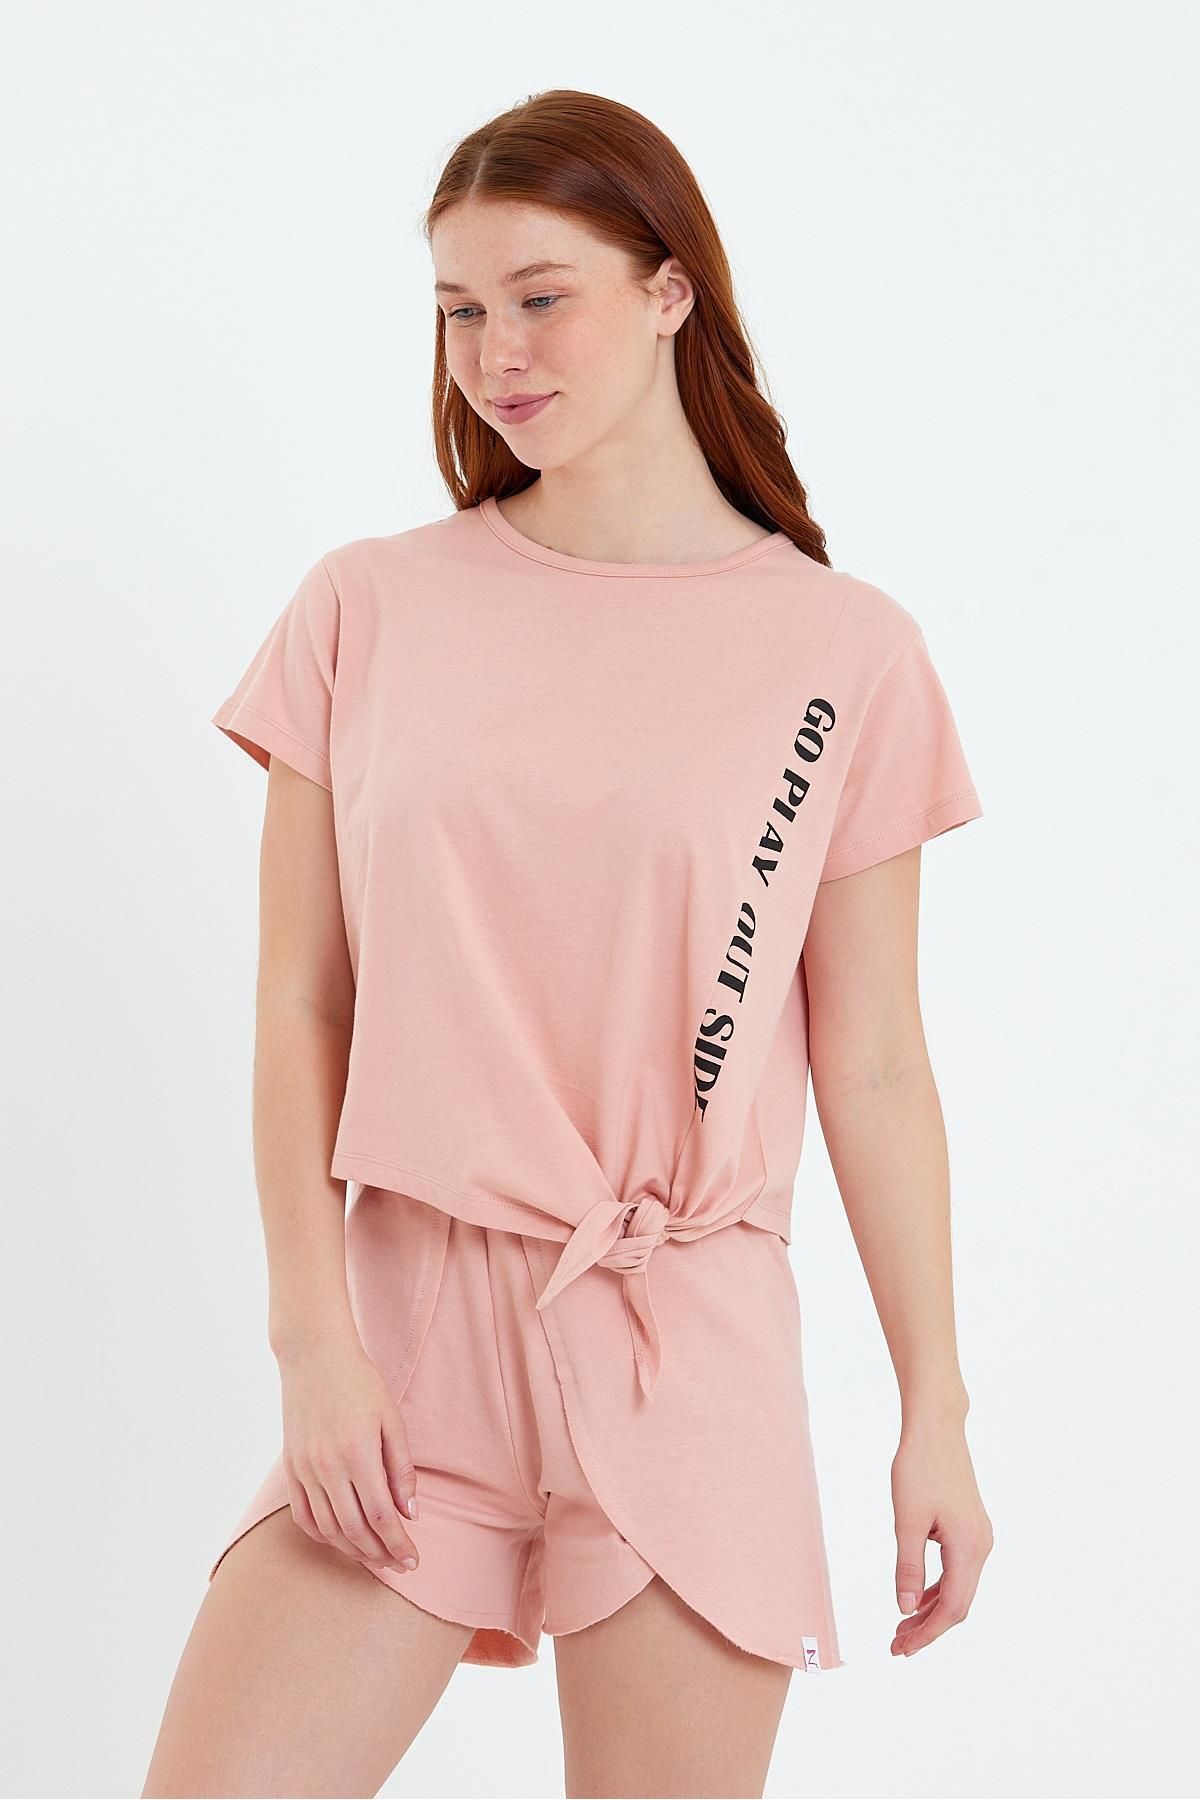 Zeyland Kadın Go Play Baskılı Ve Bağlamalı T-shirt